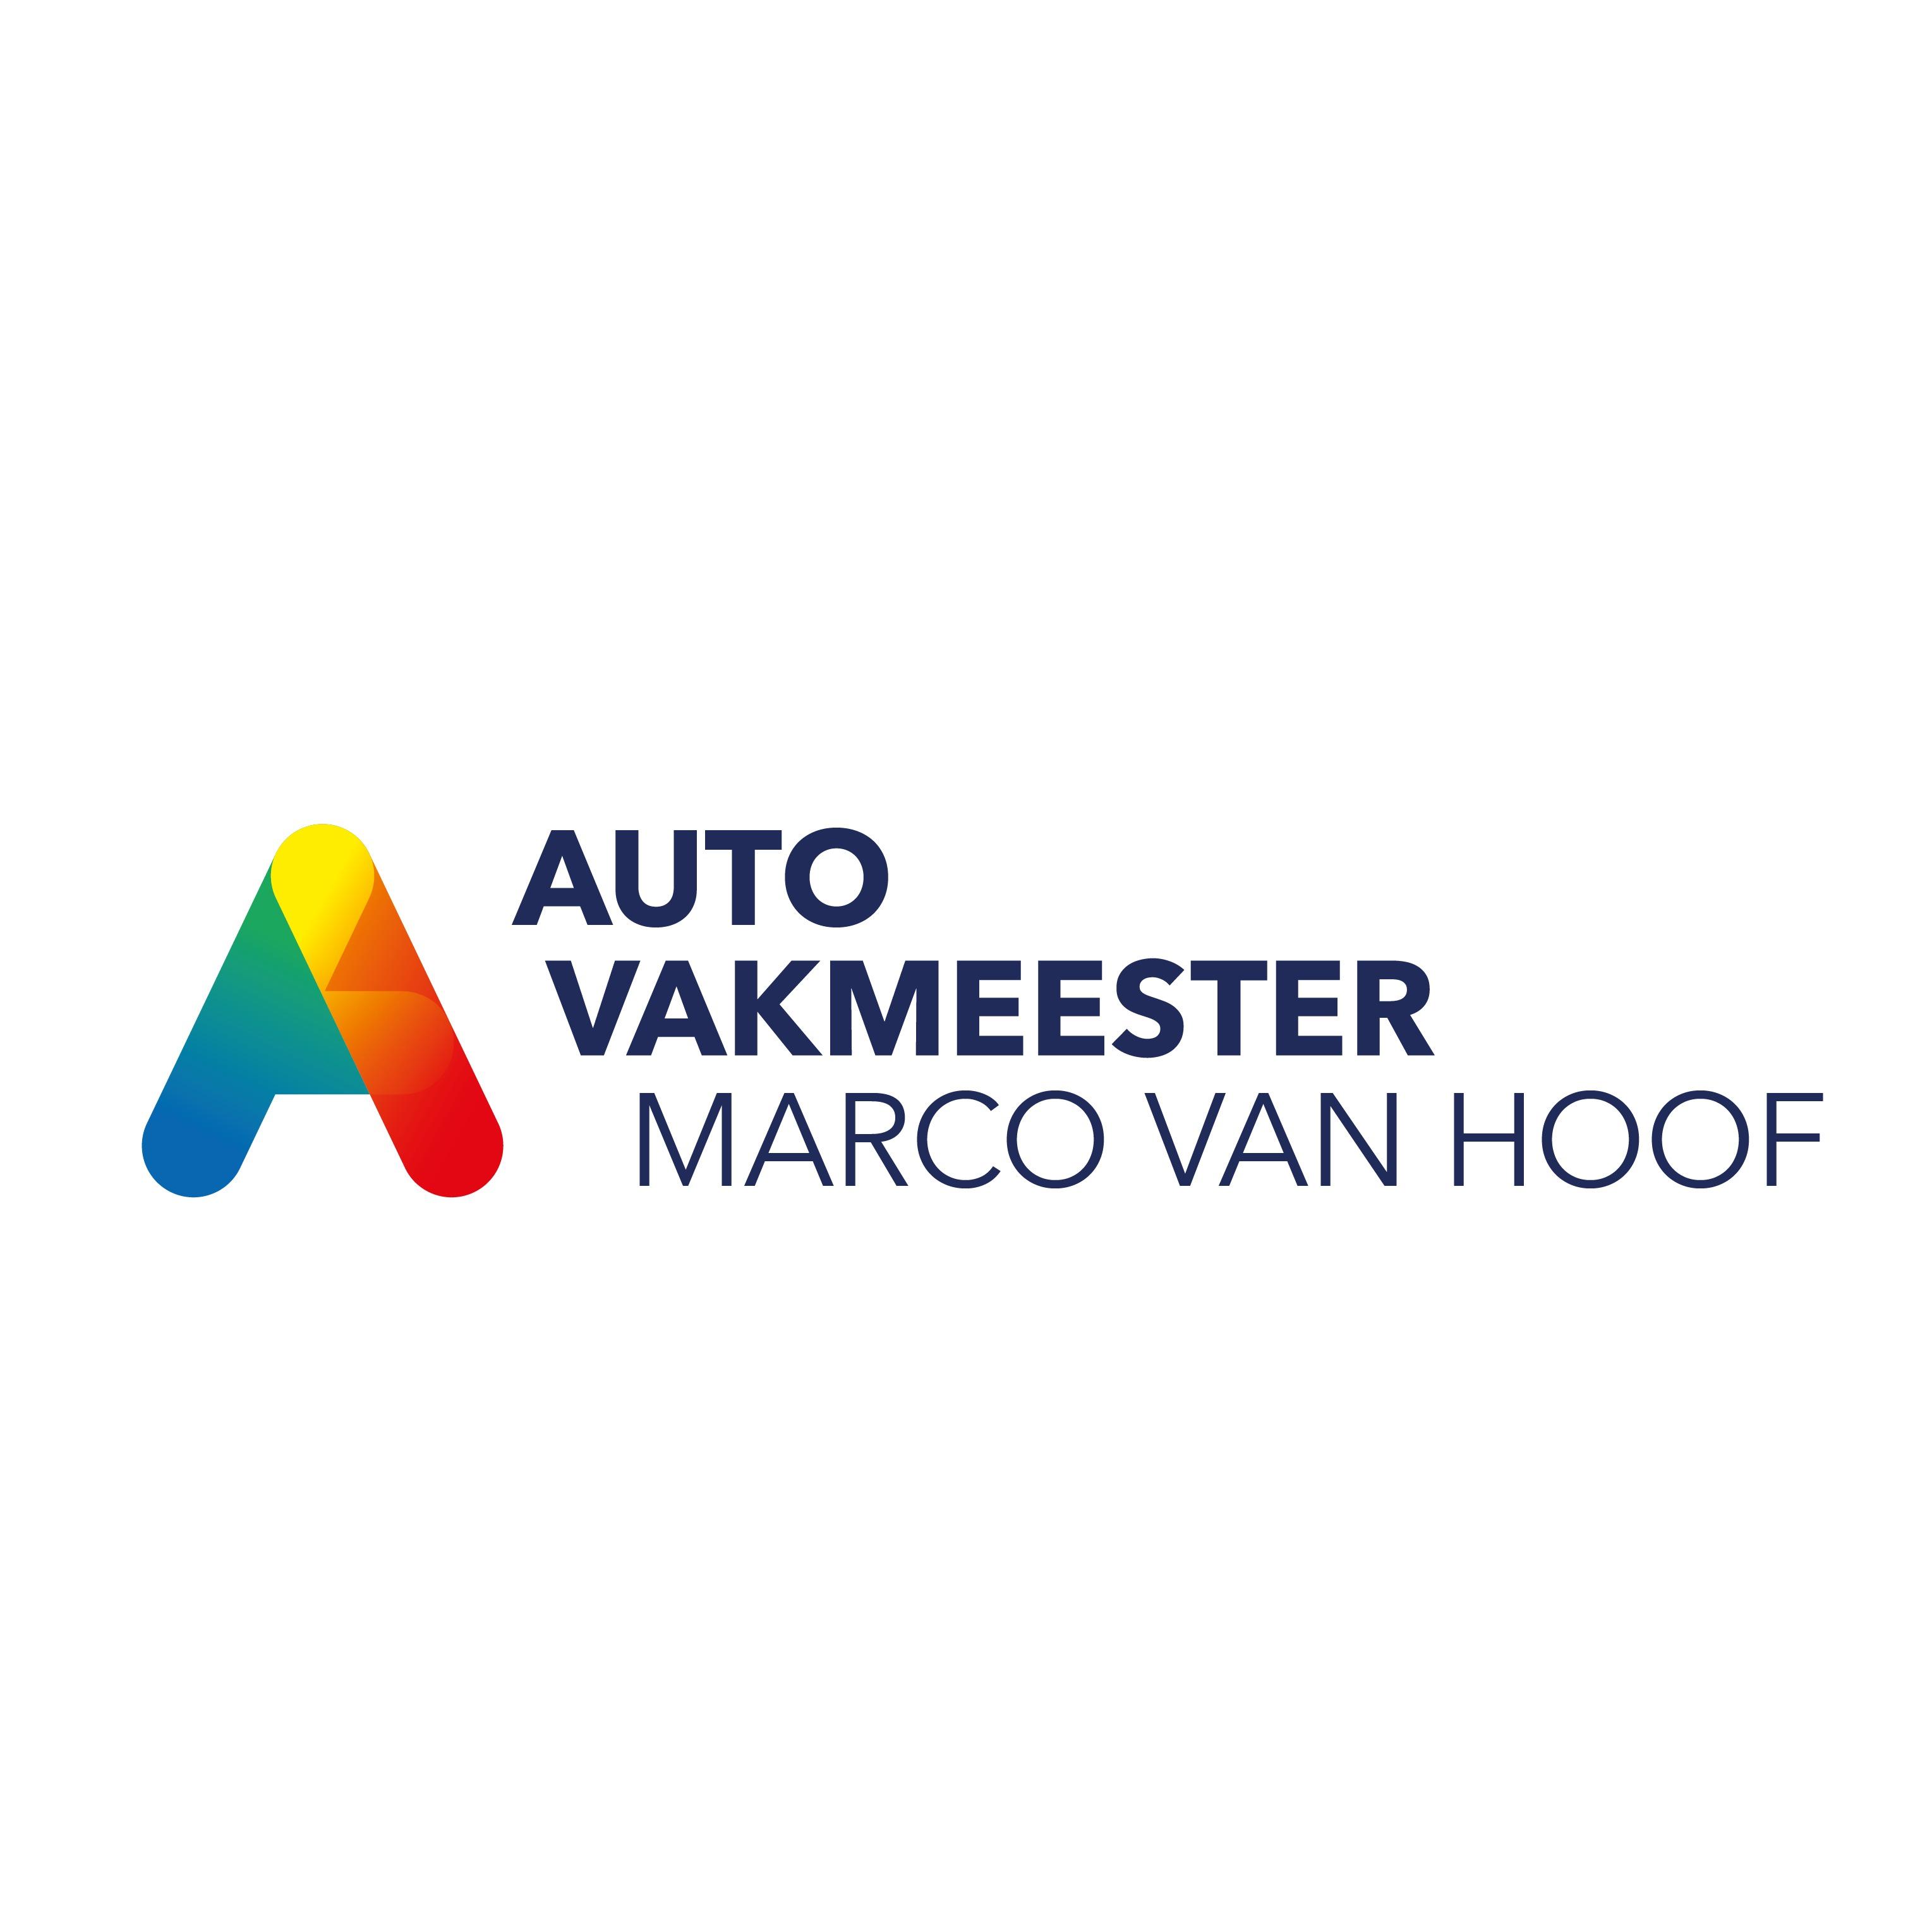 Autovakmeester Marco van Hoof Logo